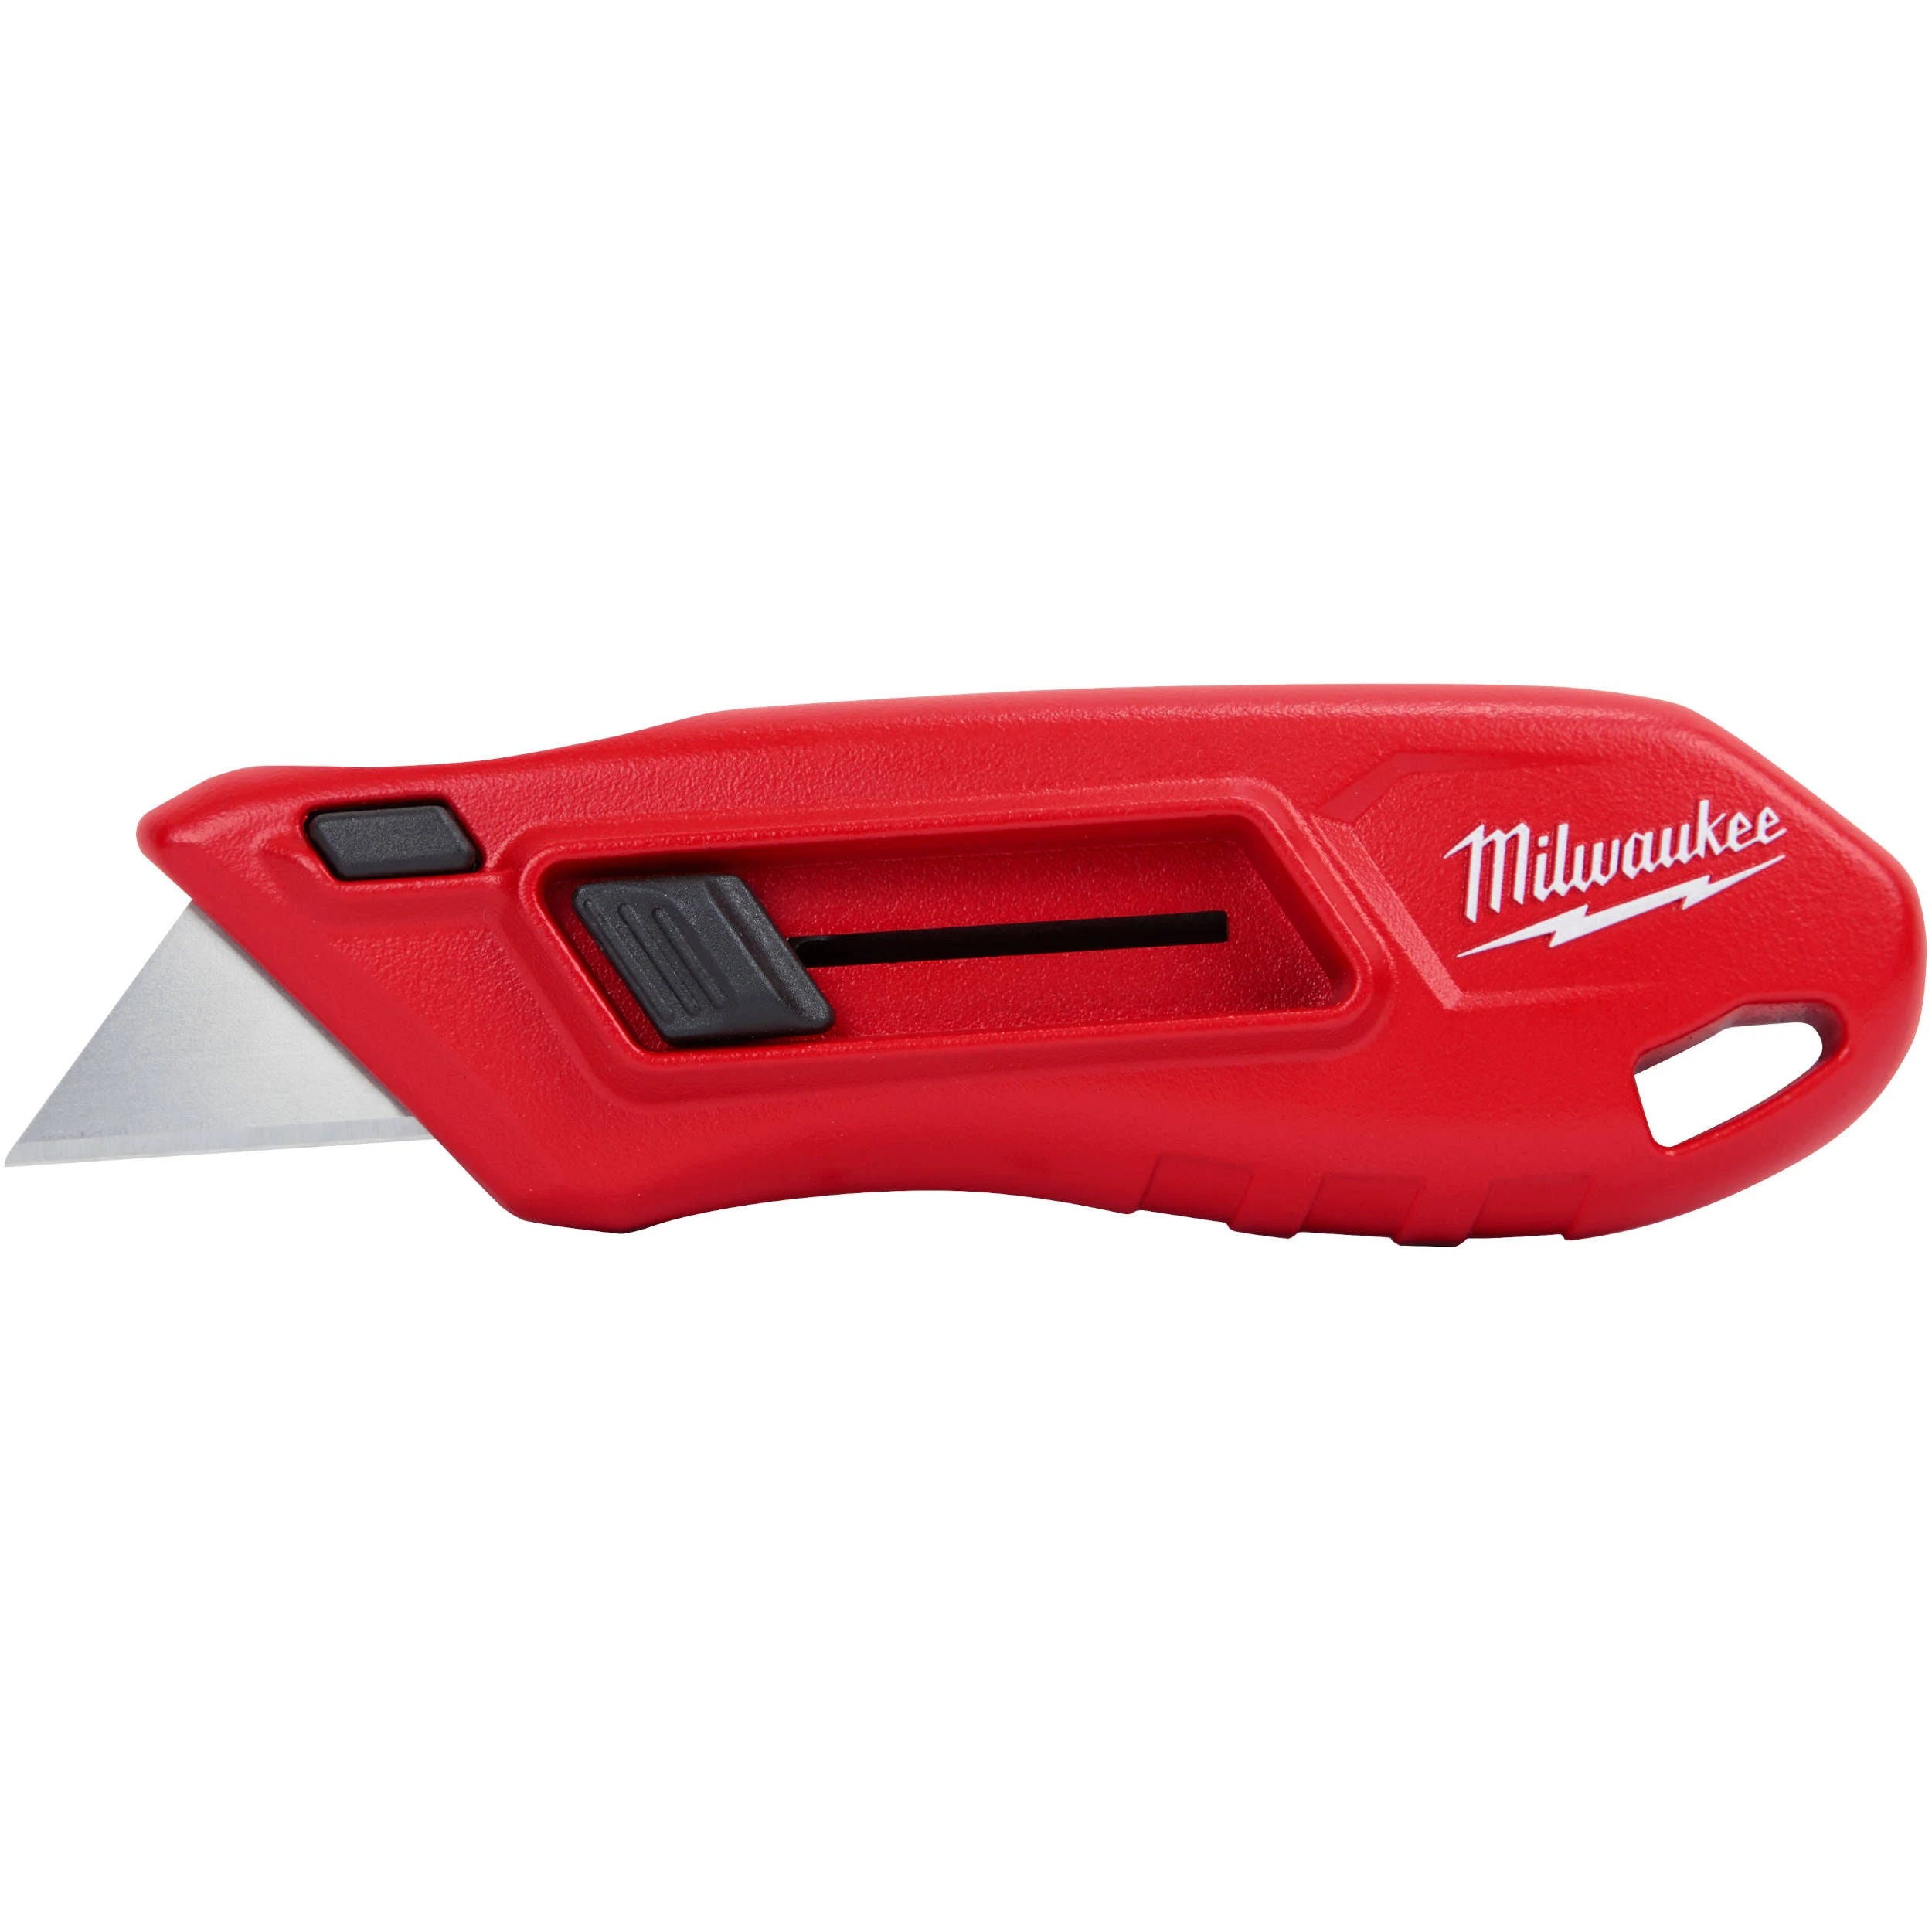 Milwaukee Compact Side Slide Utility Knife | Image